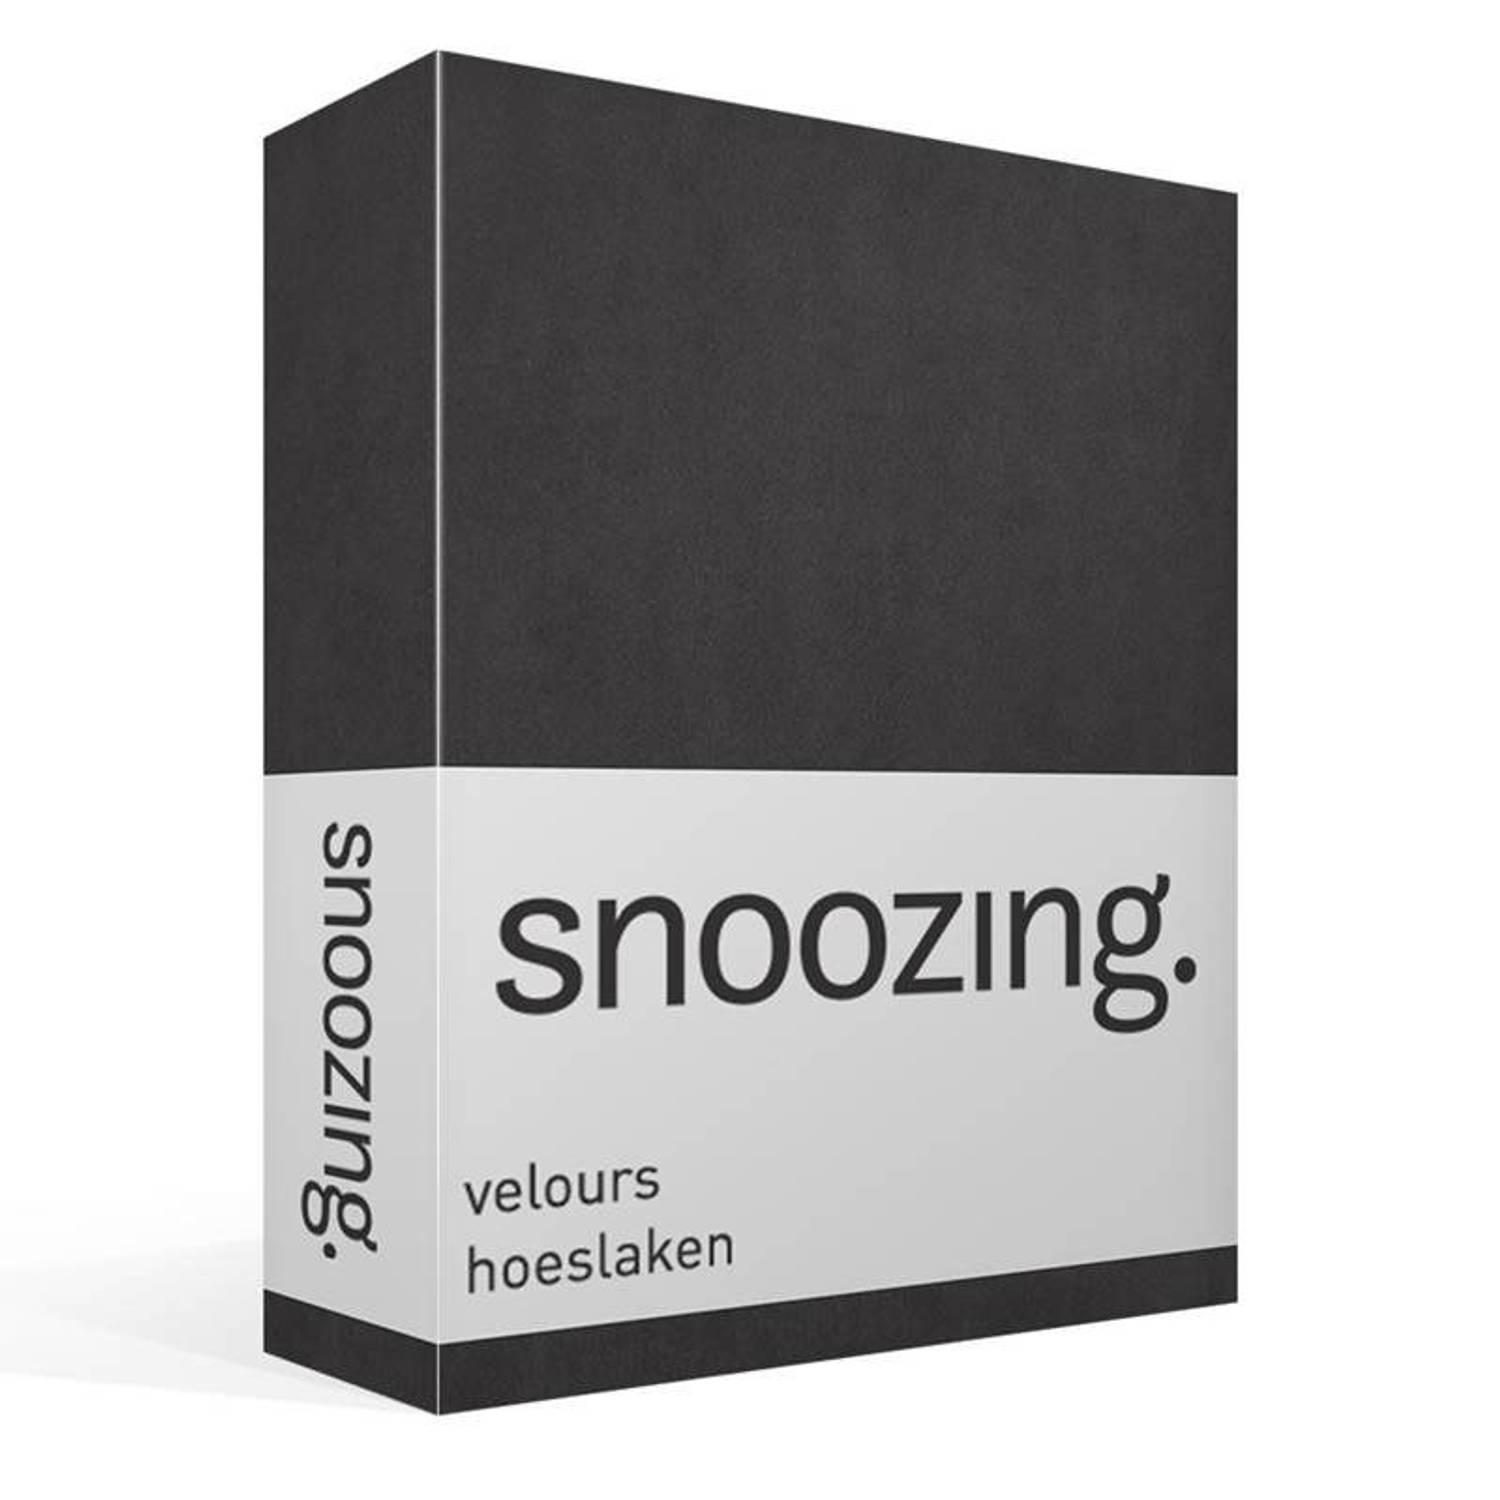 Snoozing velours hoeslaken - Tweepersoons - Antraciet